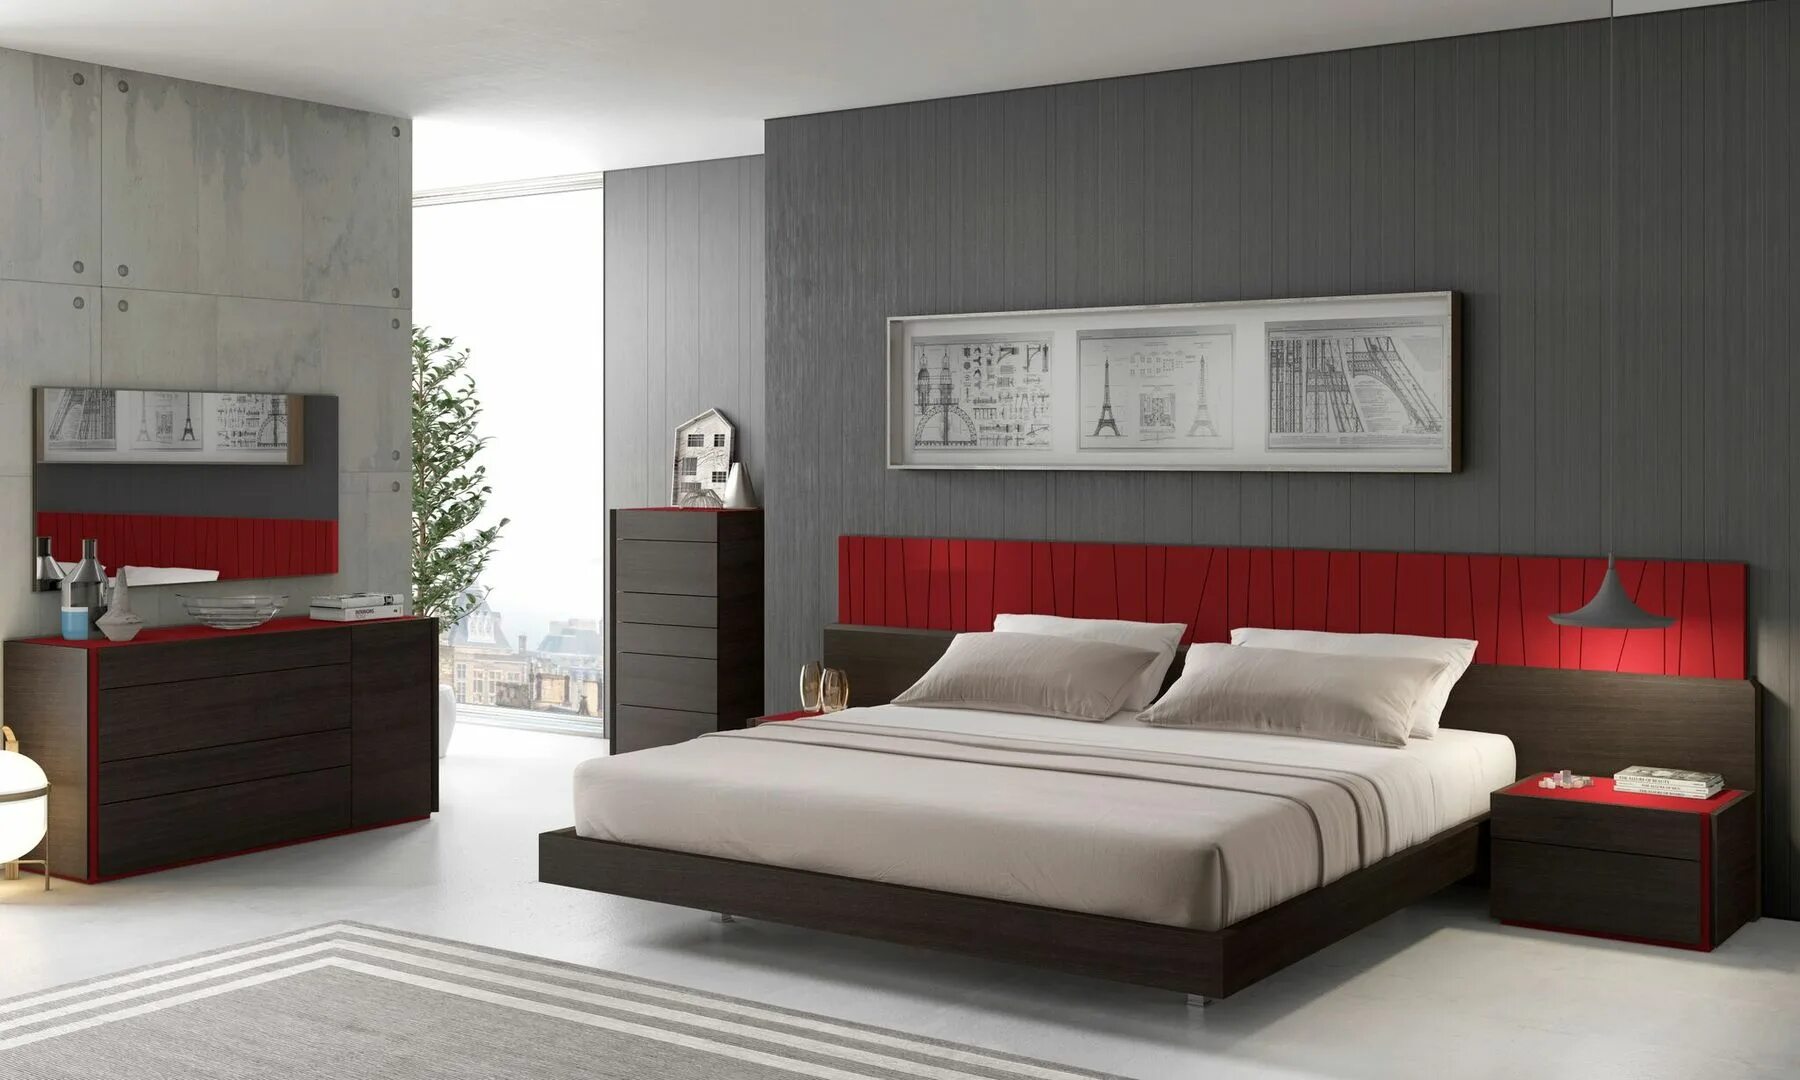 Современная мебель спальни фото. Гарнитур Кинг сайз спальный черный цвет. Современные спальные гарнитуры. Спальня в цвете венге. Спальня в стиле венге.